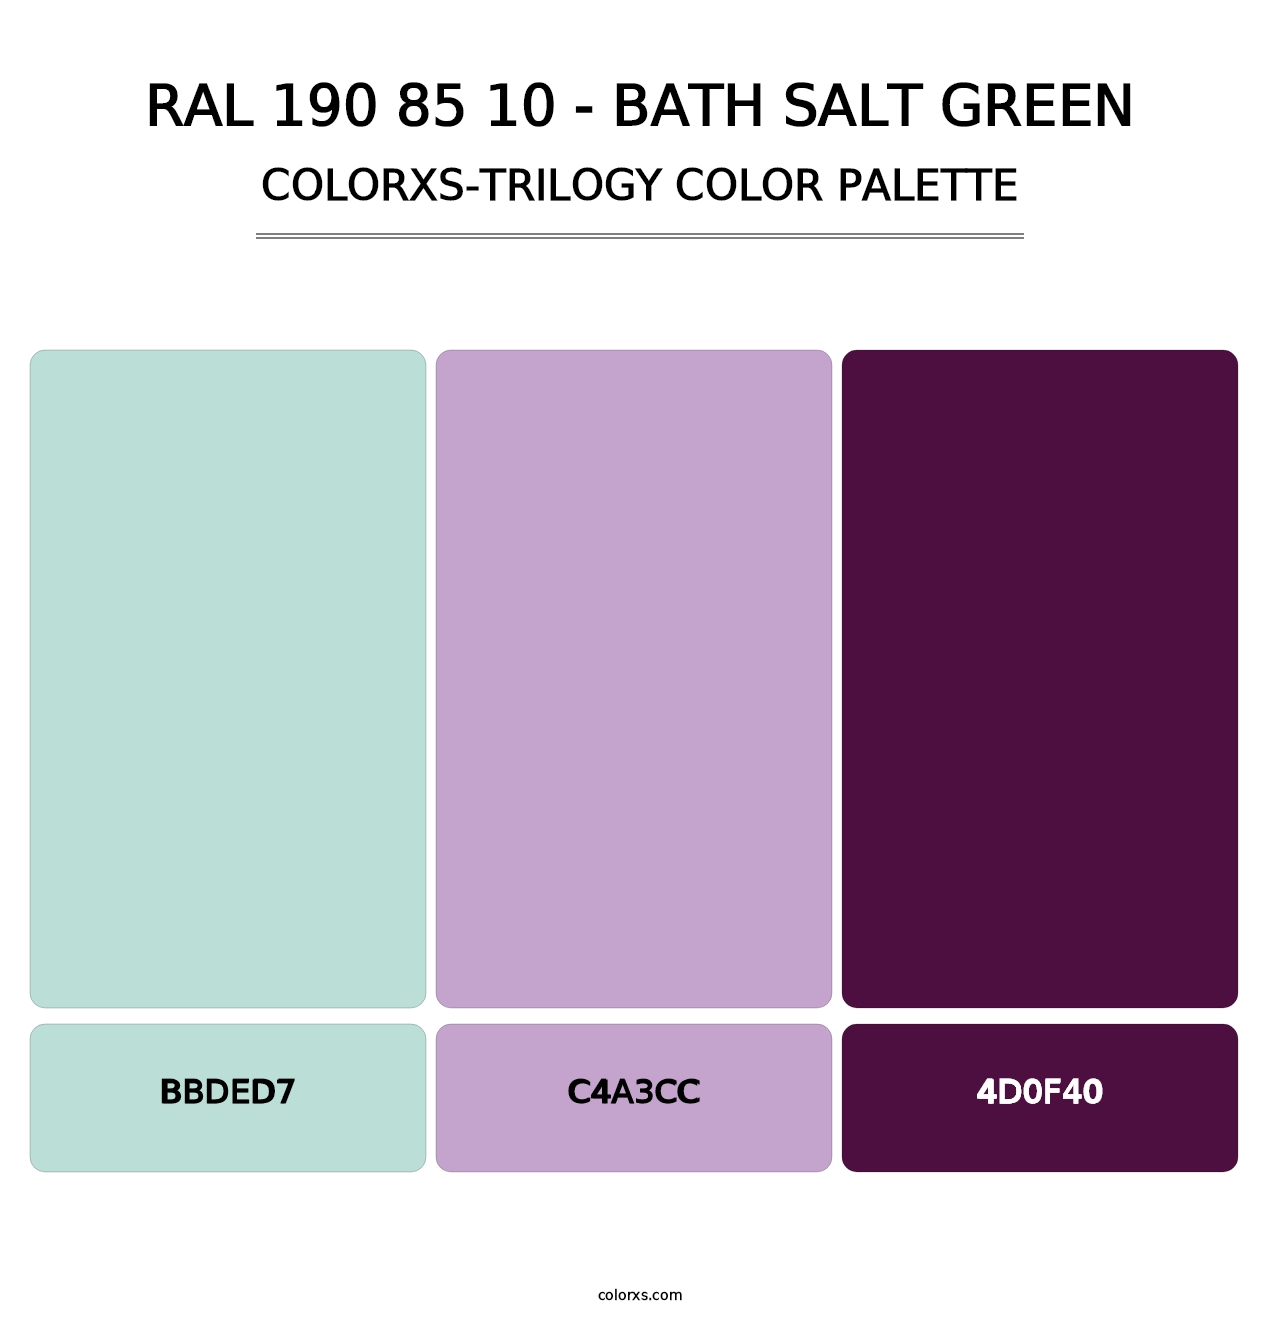 RAL 190 85 10 - Bath Salt Green - Colorxs Trilogy Palette